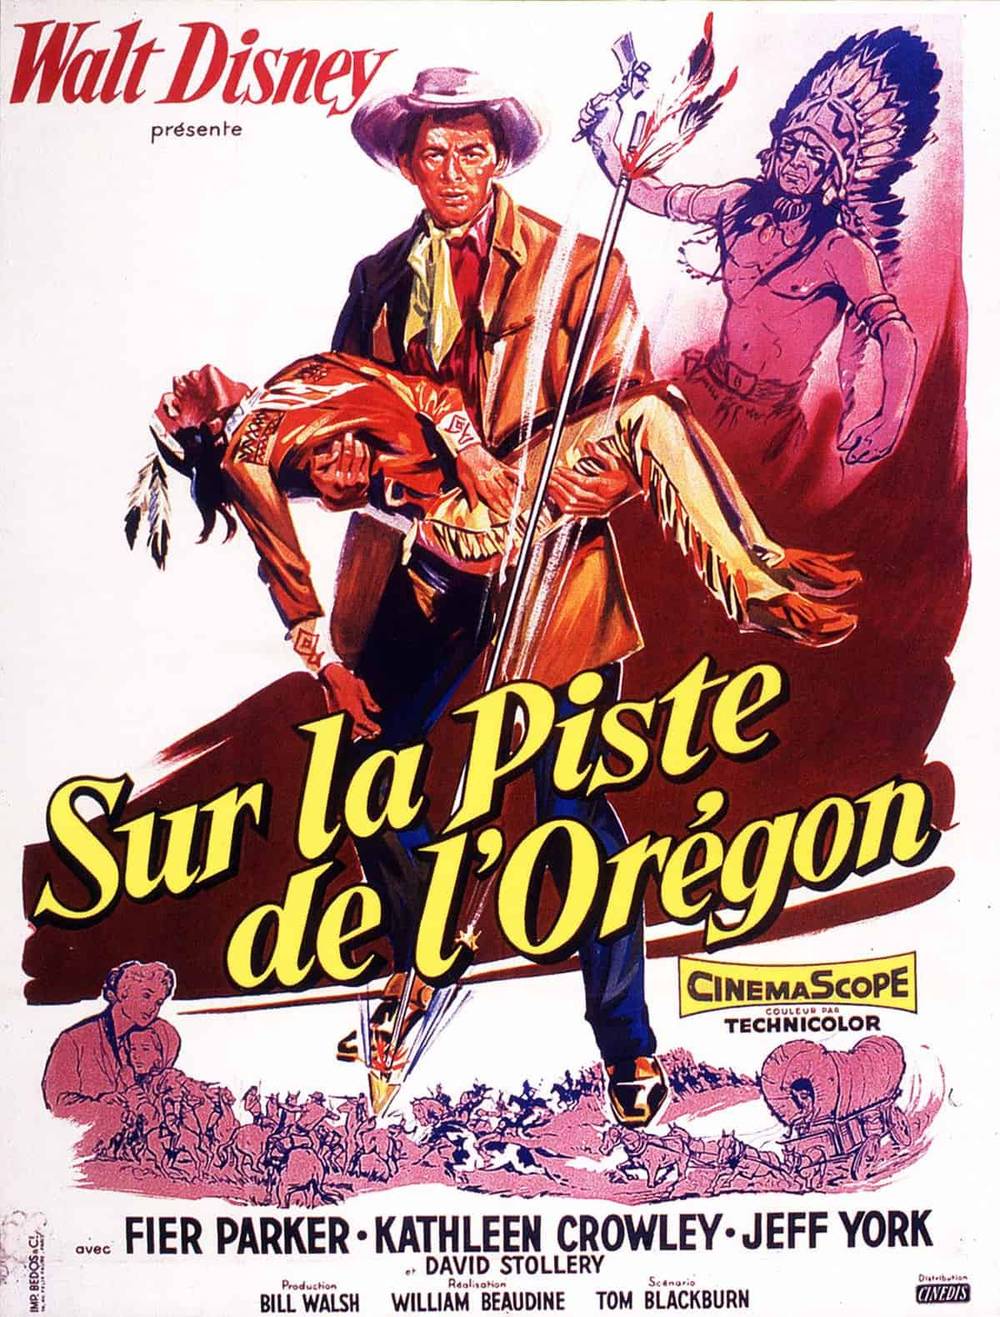 Affiche du film vintage pour "sur la piste de l'oregon" présentant des illustrations vives d'un homme skiant et d'un autre homme pointant du doigt, tous deux vêtus de vêtements d'époque, avec des tons rouge et orange spectaculaires.